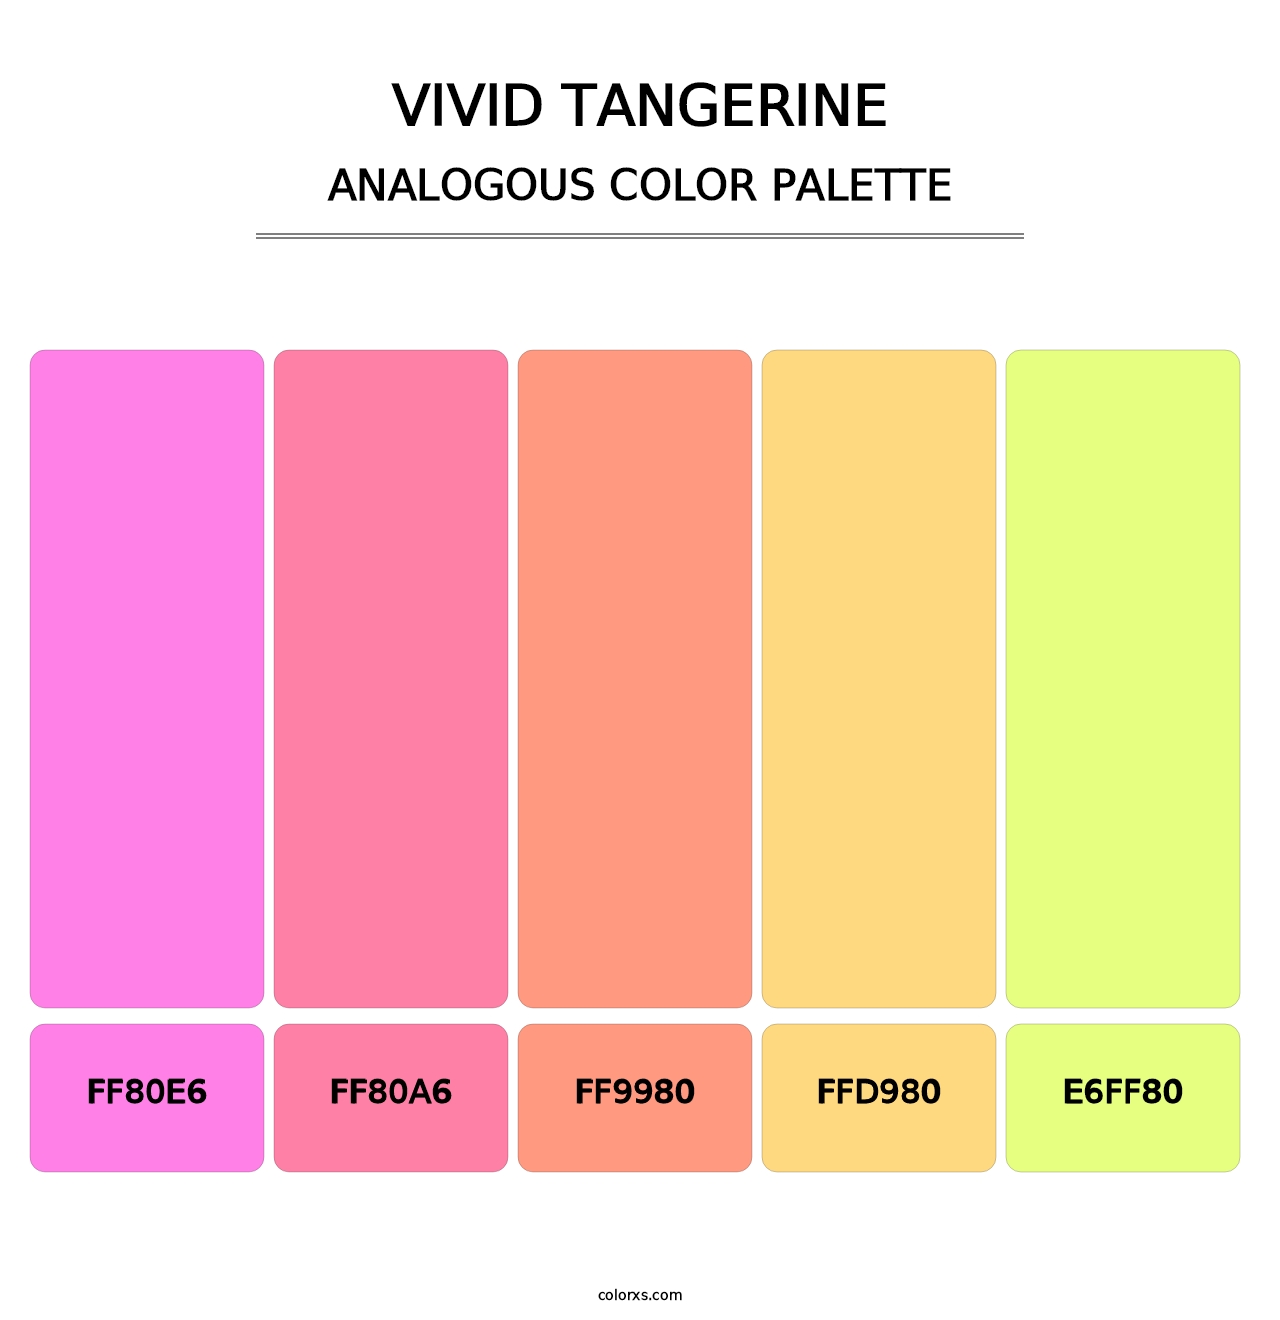 Vivid Tangerine - Analogous Color Palette